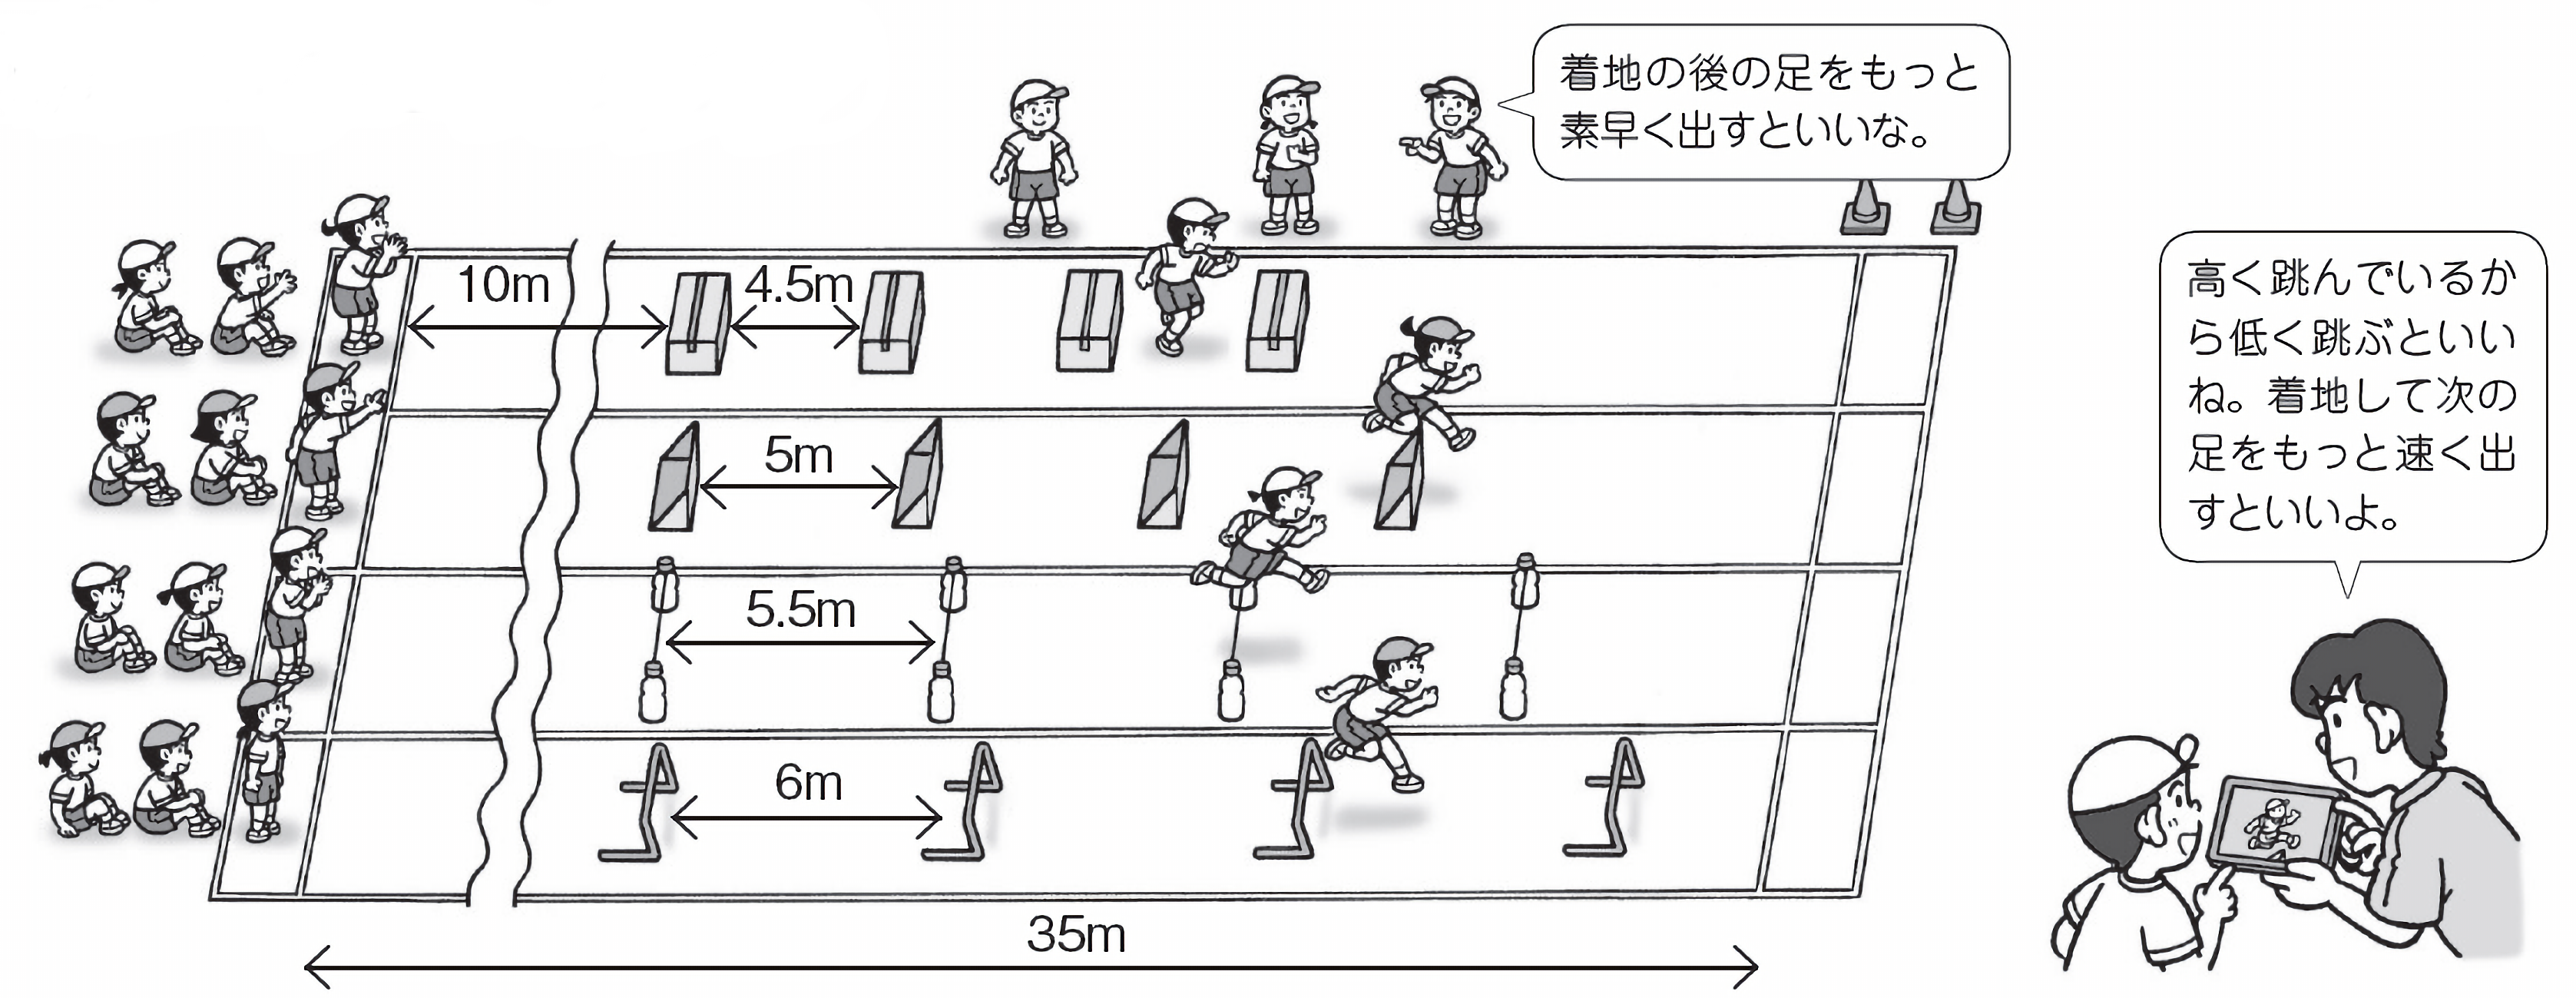 小4体育 走 跳の運動 小型ハードル走 指導アイデア みんなの教育技術